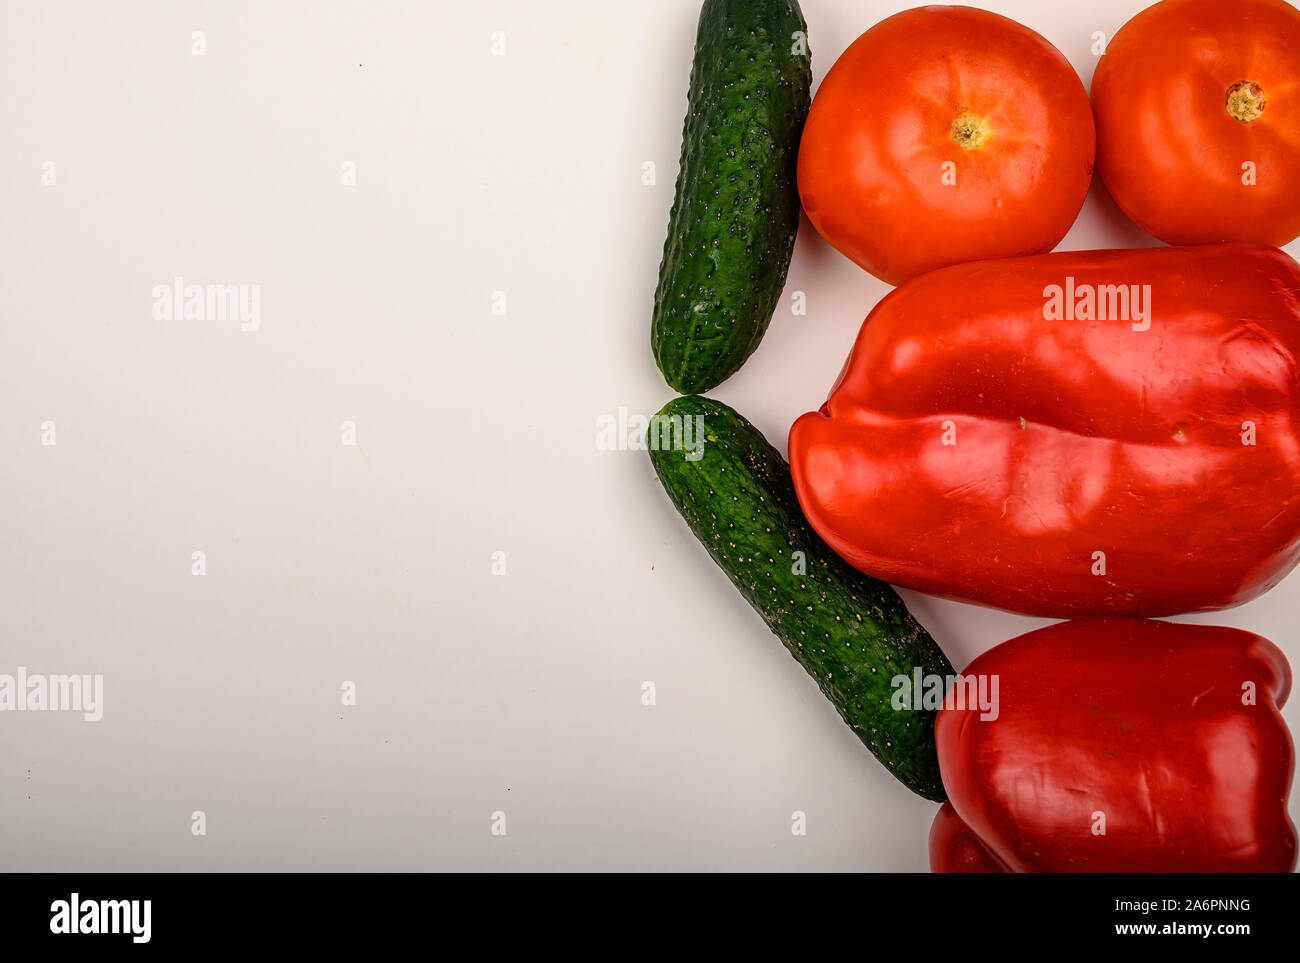 La tomate, le concombre et le poivron sur fond blanc. Régime alimentaire sain. Régime alimentaire de remise en forme. Copy space Banque D'Images